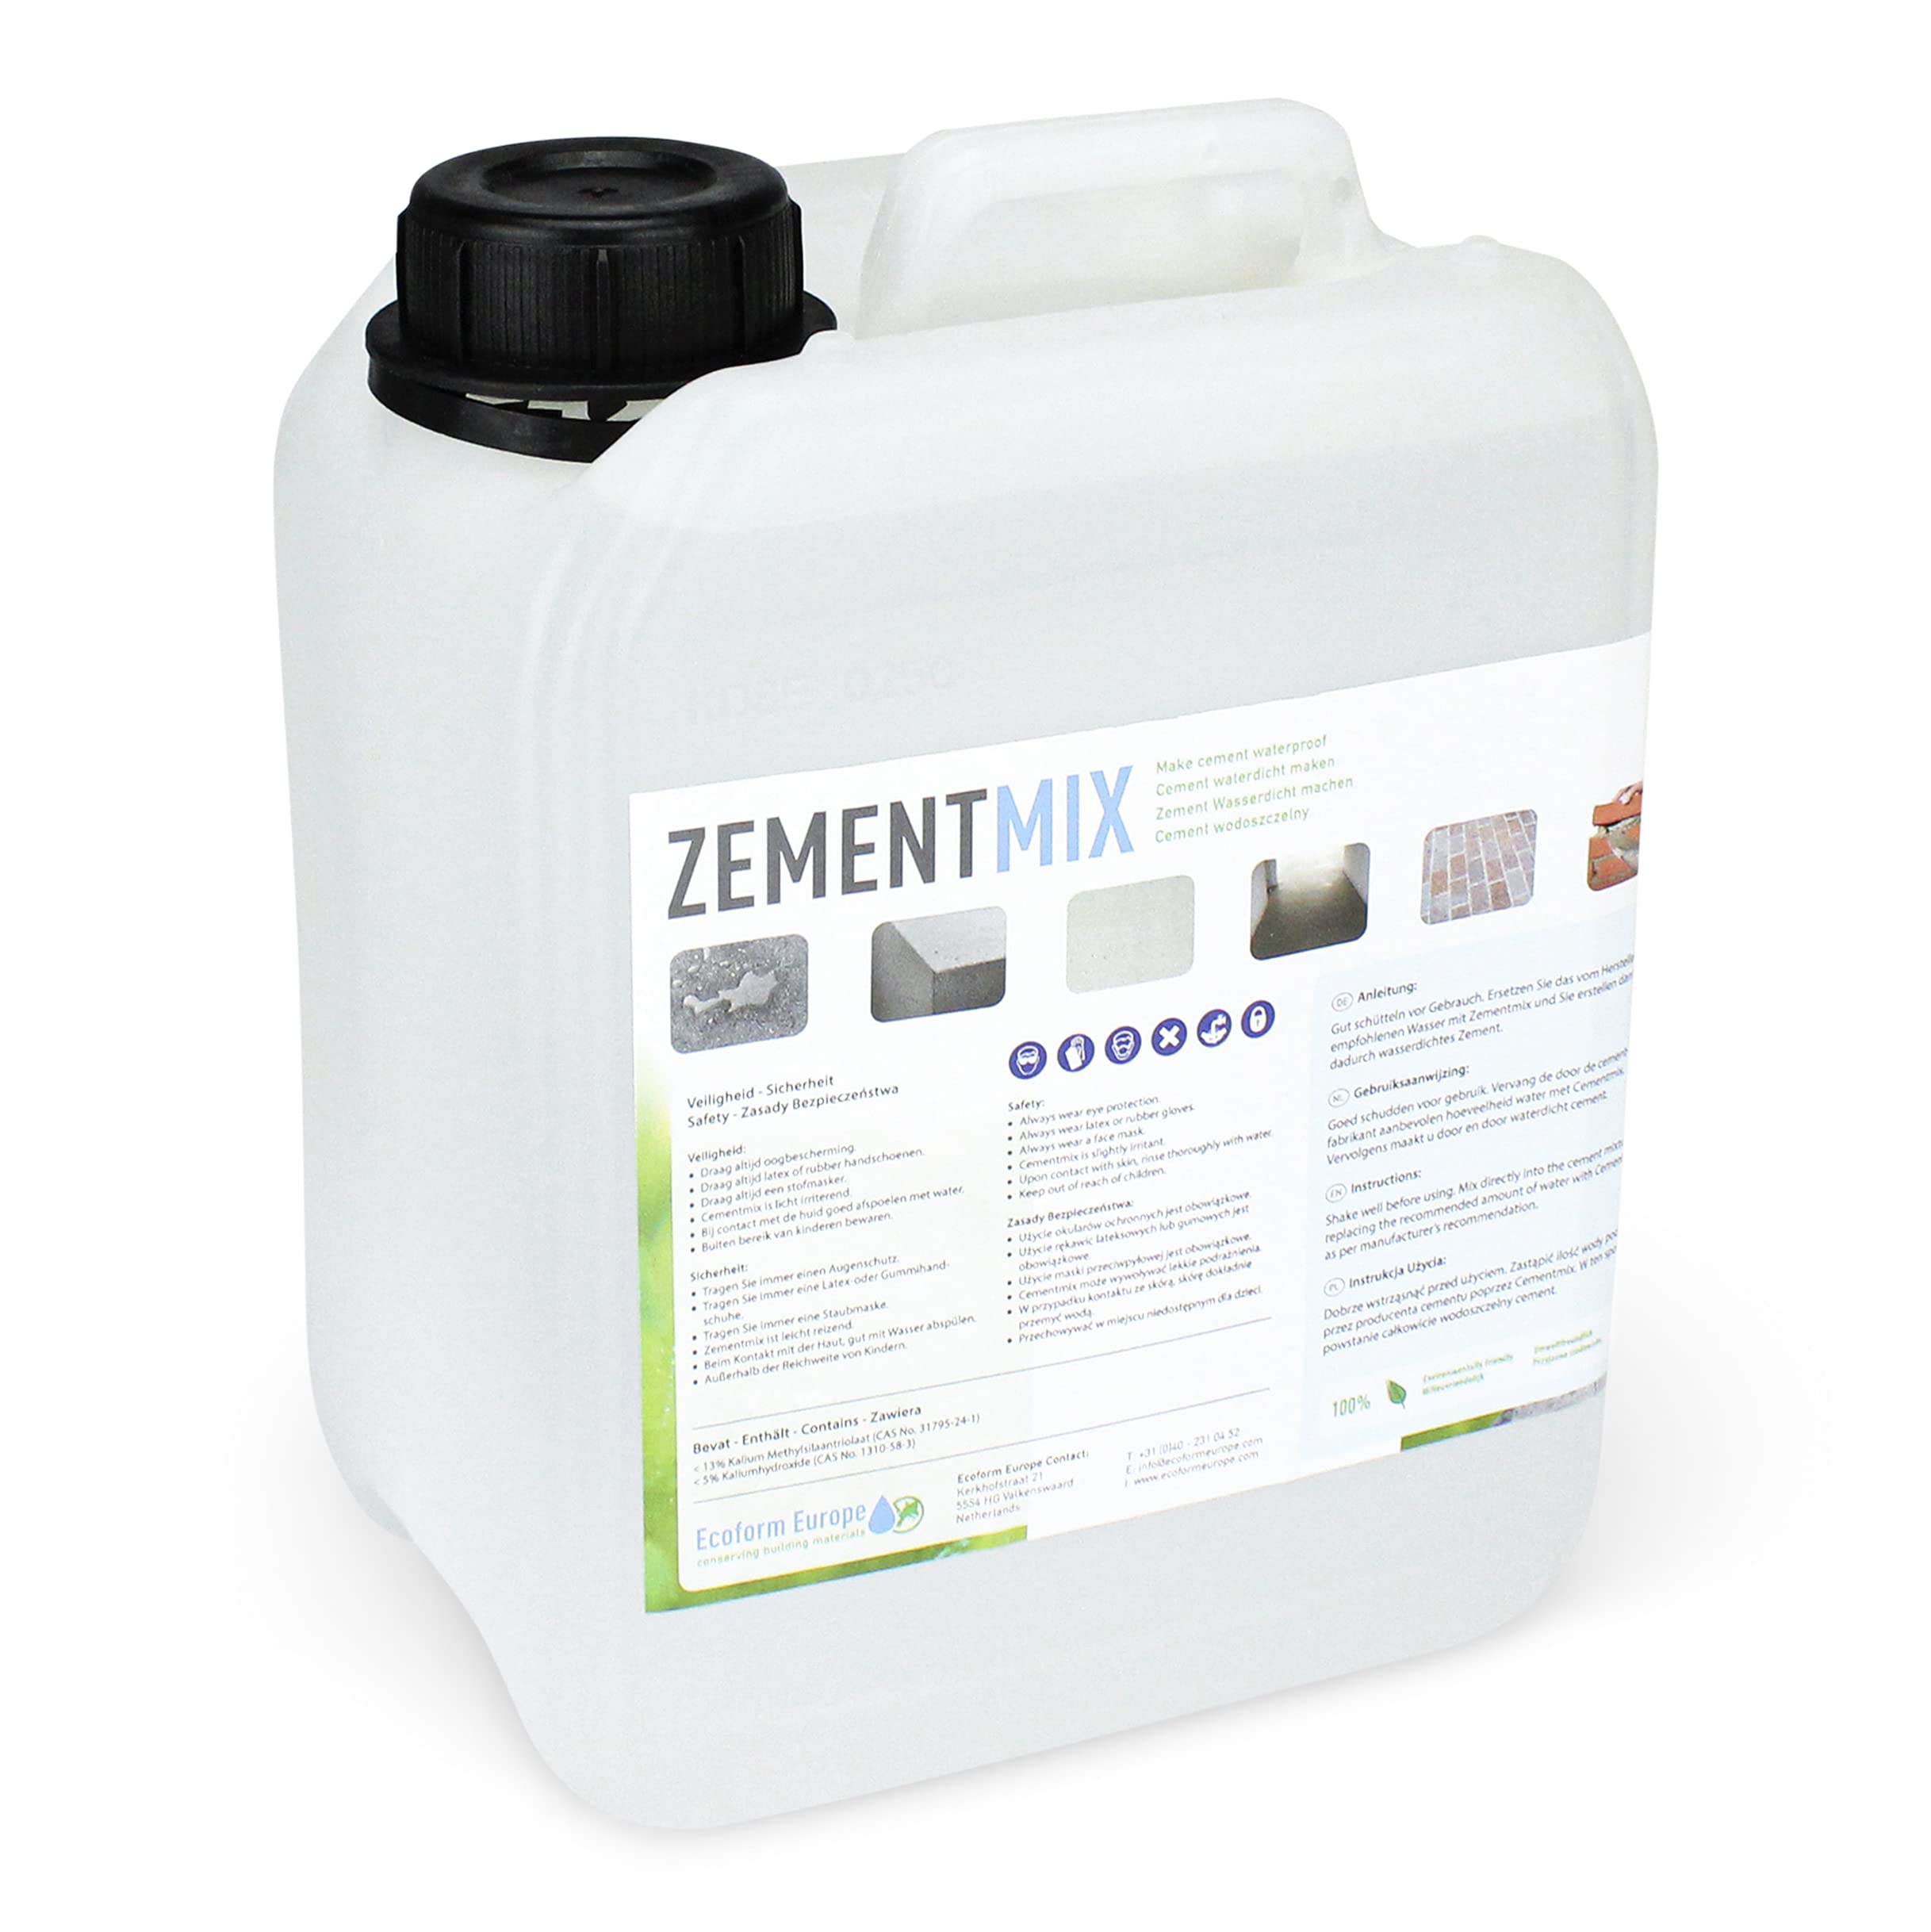 Ecoform Zementmix - Betondichtmittel für WU Beton - flüssigkeitsdichten Beton - Frostschutz & wasserdichten Mörtel Für den Innen- und Außeneinsatz - 2,5 Liter